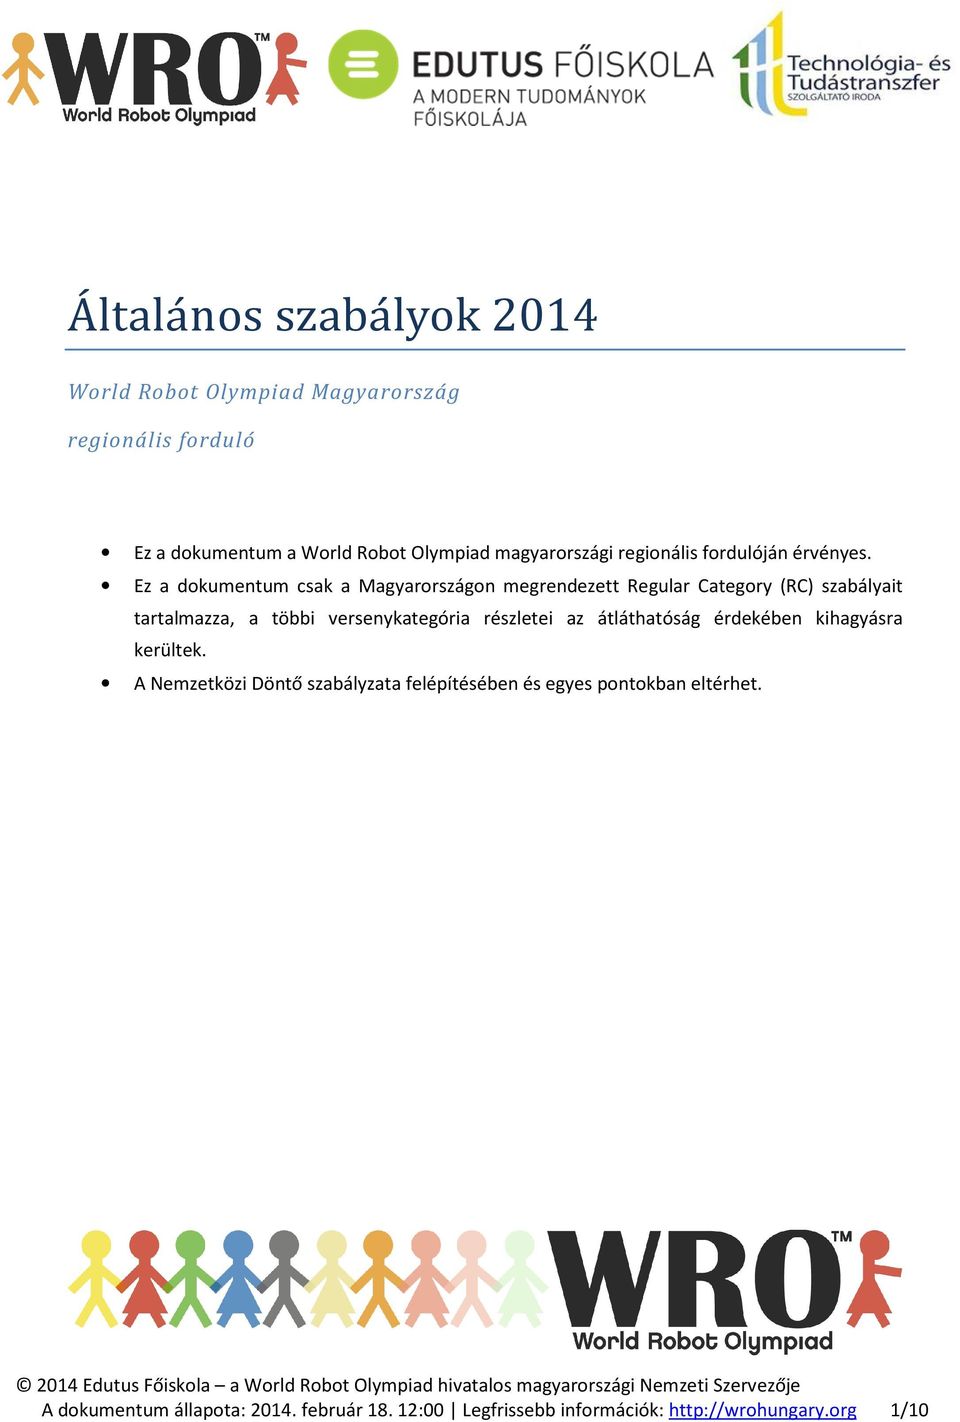 Ez a dokumentum csak a Magyarországon megrendezett Regular Category (RC) szabályait tartalmazza, a többi versenykategória